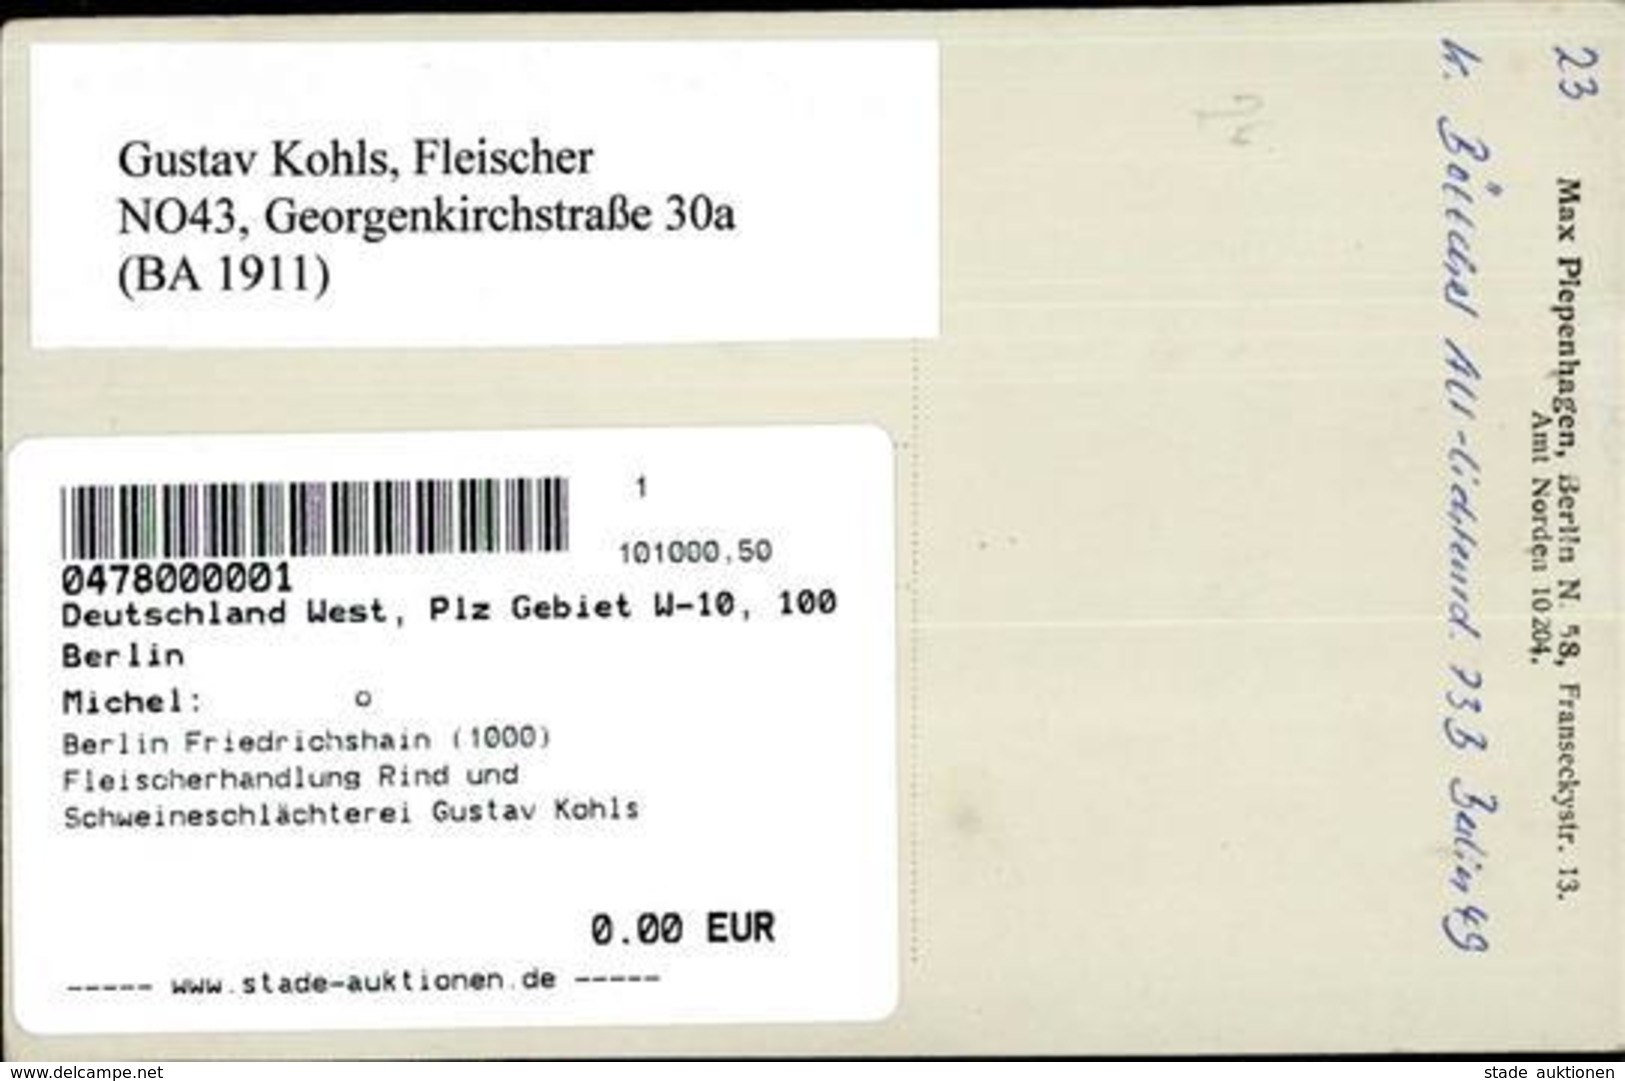 Berlin Friedrichshain (1000) Fleischerhandlung Rind Und Schweineschlächterei Gustav Kohls Georgenkirchstrasse 30a Foto-A - Weltkrieg 1914-18